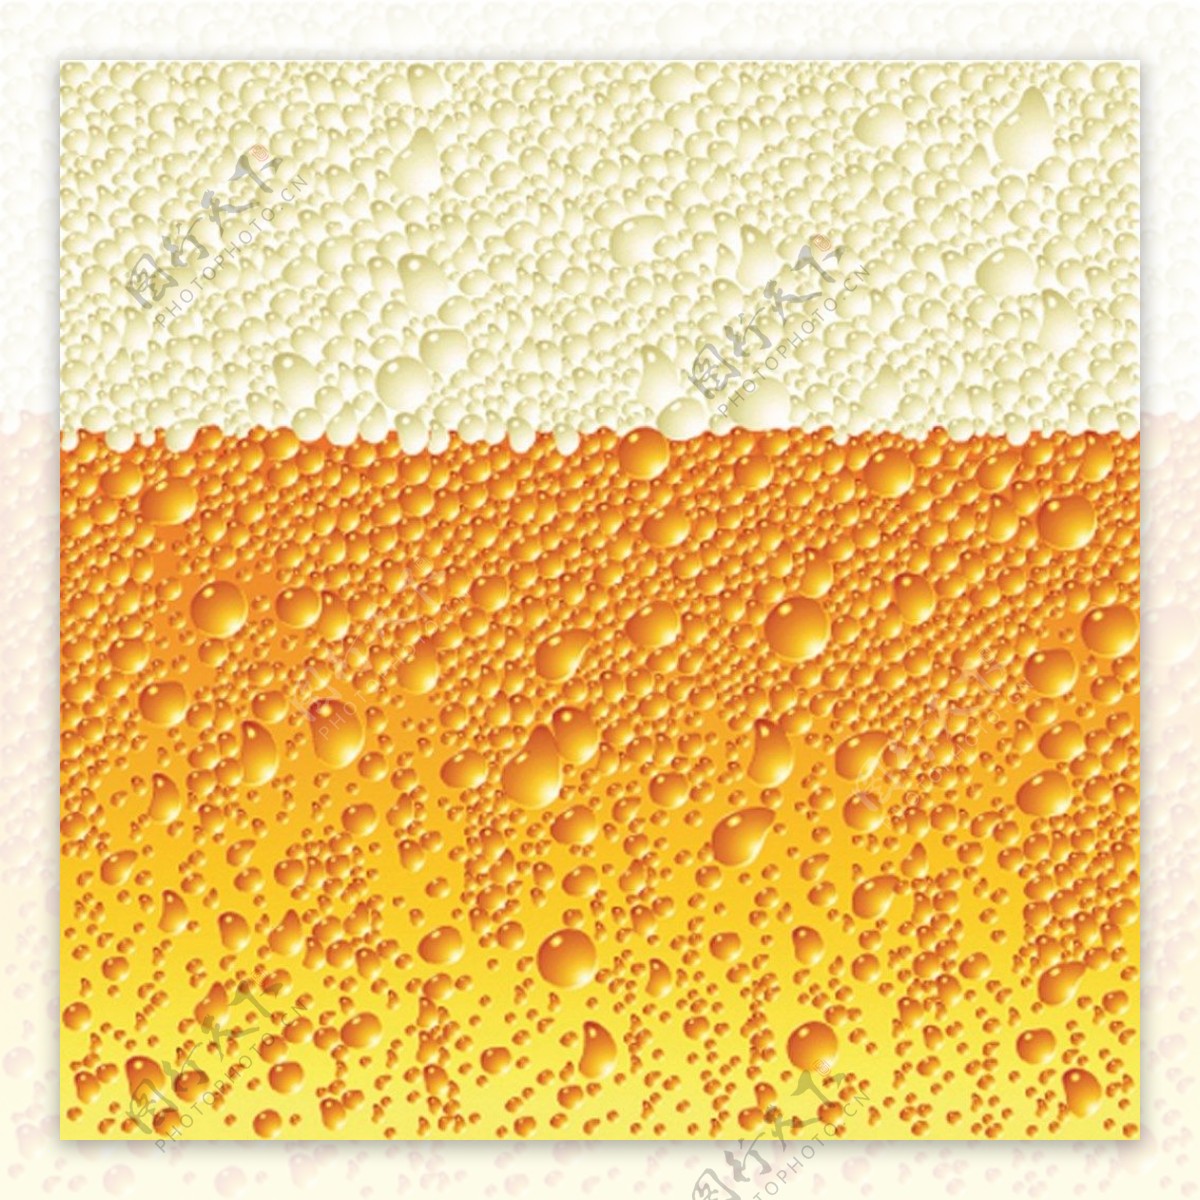 黄色气泡啤酒背景图